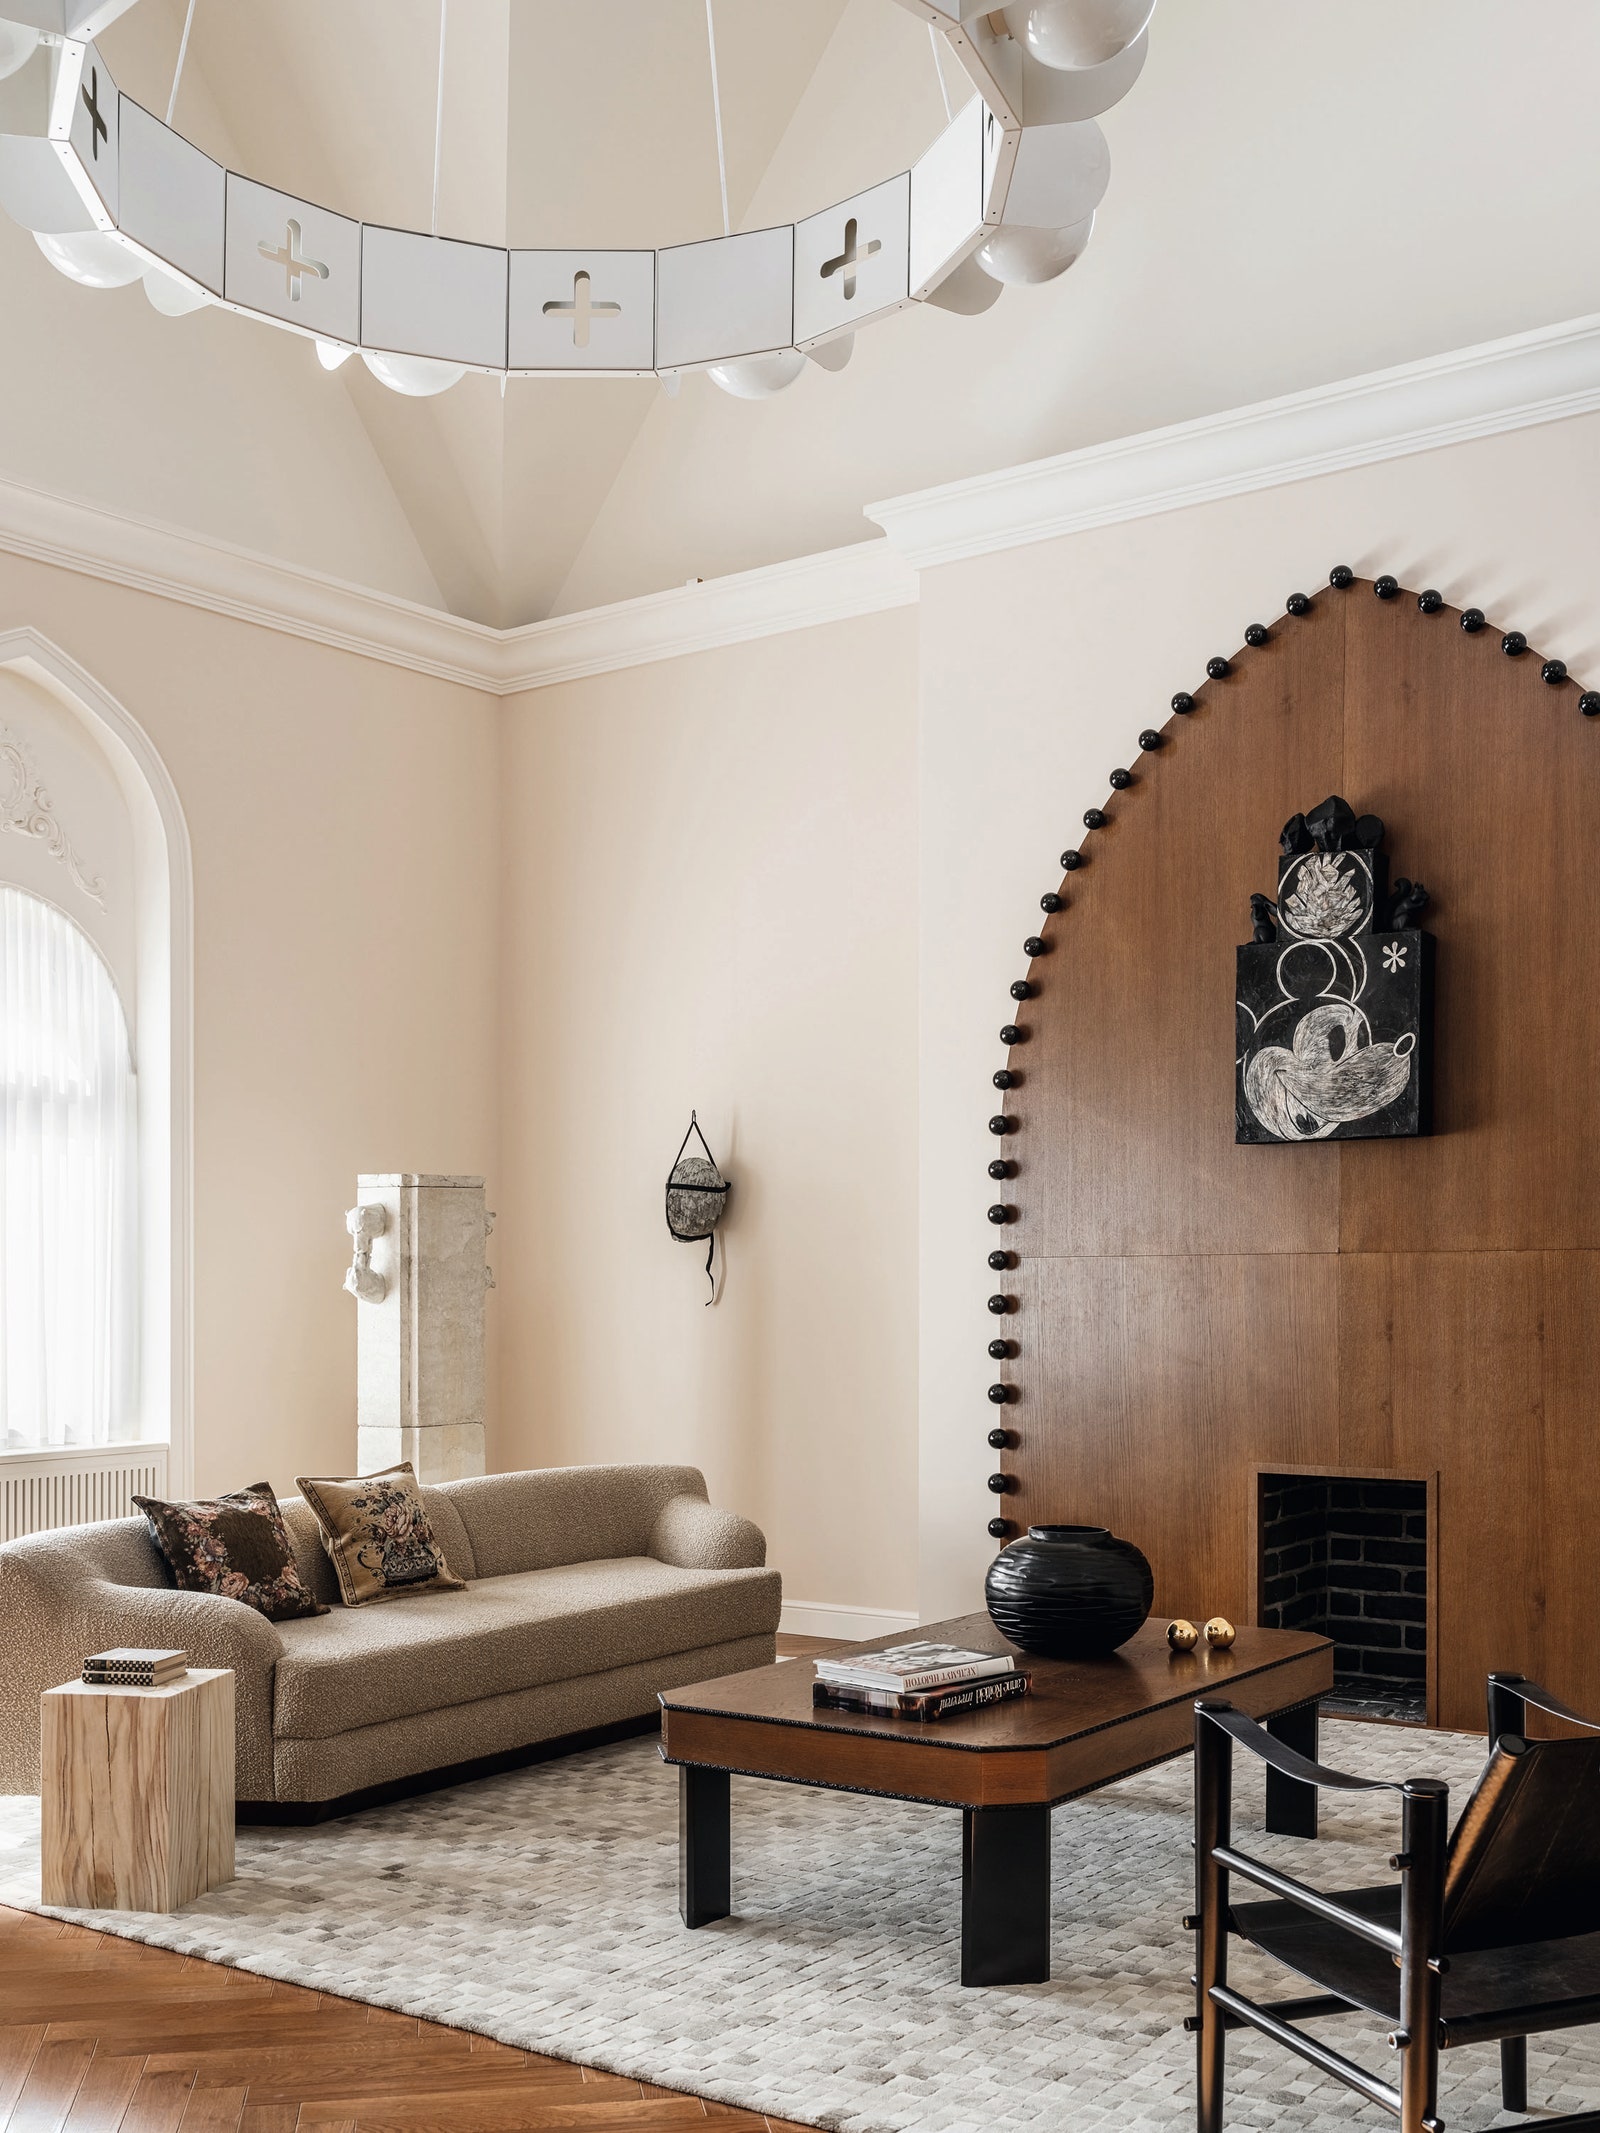 Современный стиль в интерьере квартиры и дома: фото лучших решений дизайна помещений